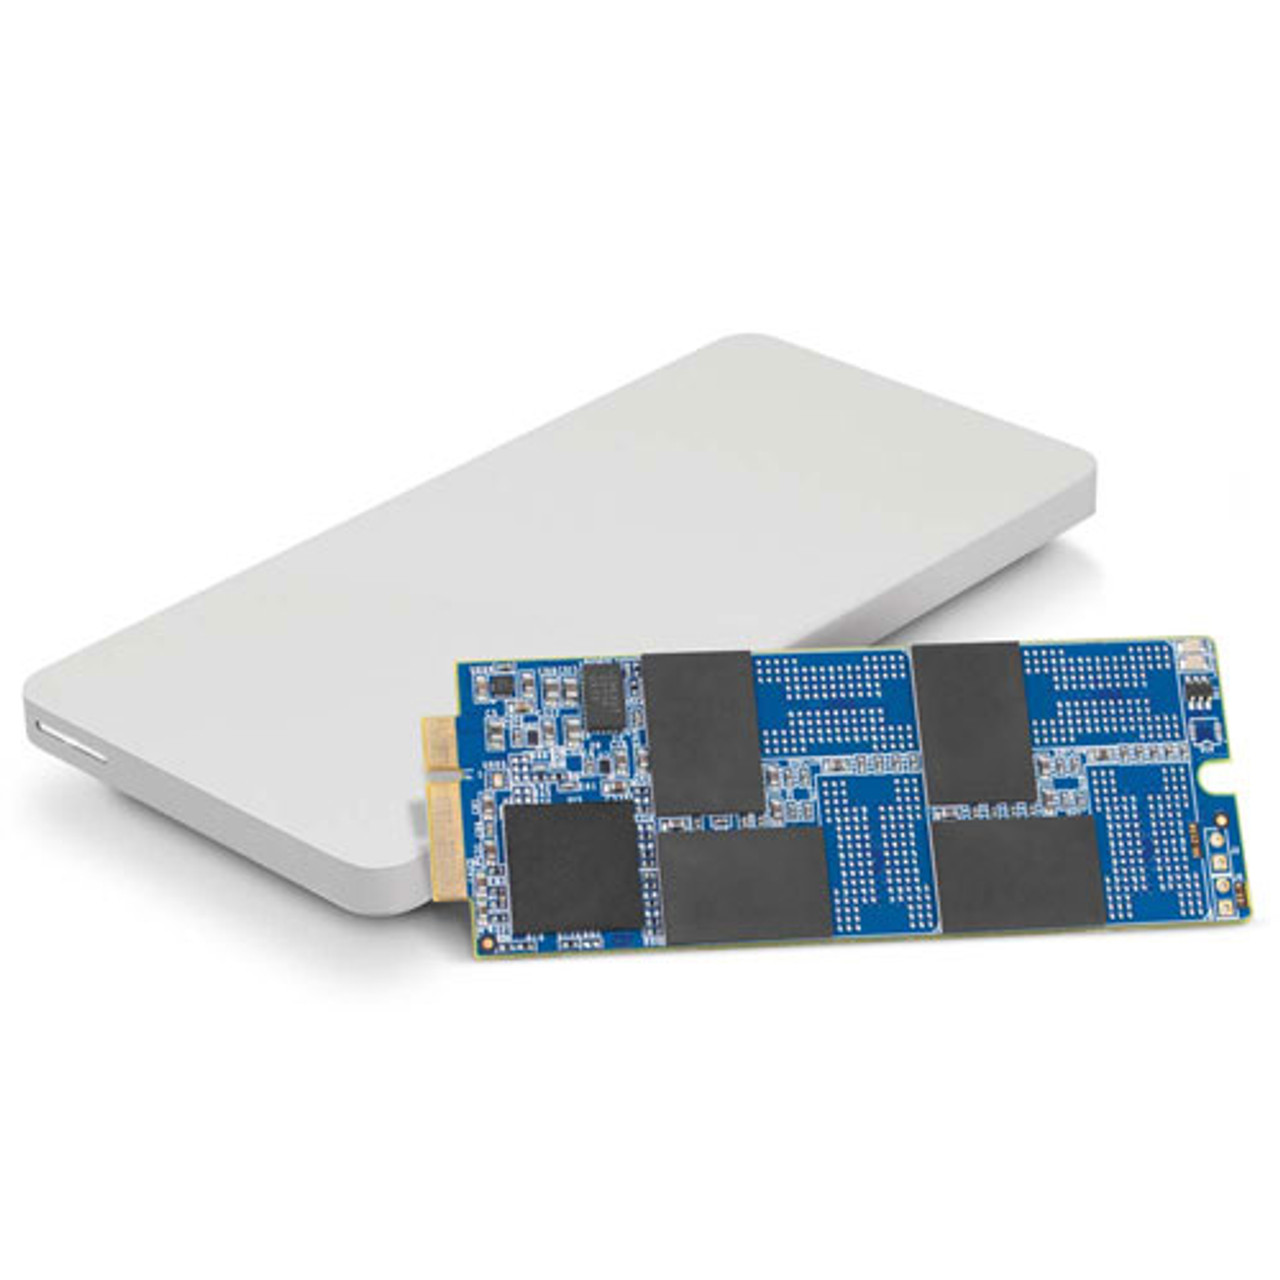 OWCS3DAP12K500, OWC 500GB Aura Pro 6G SSD